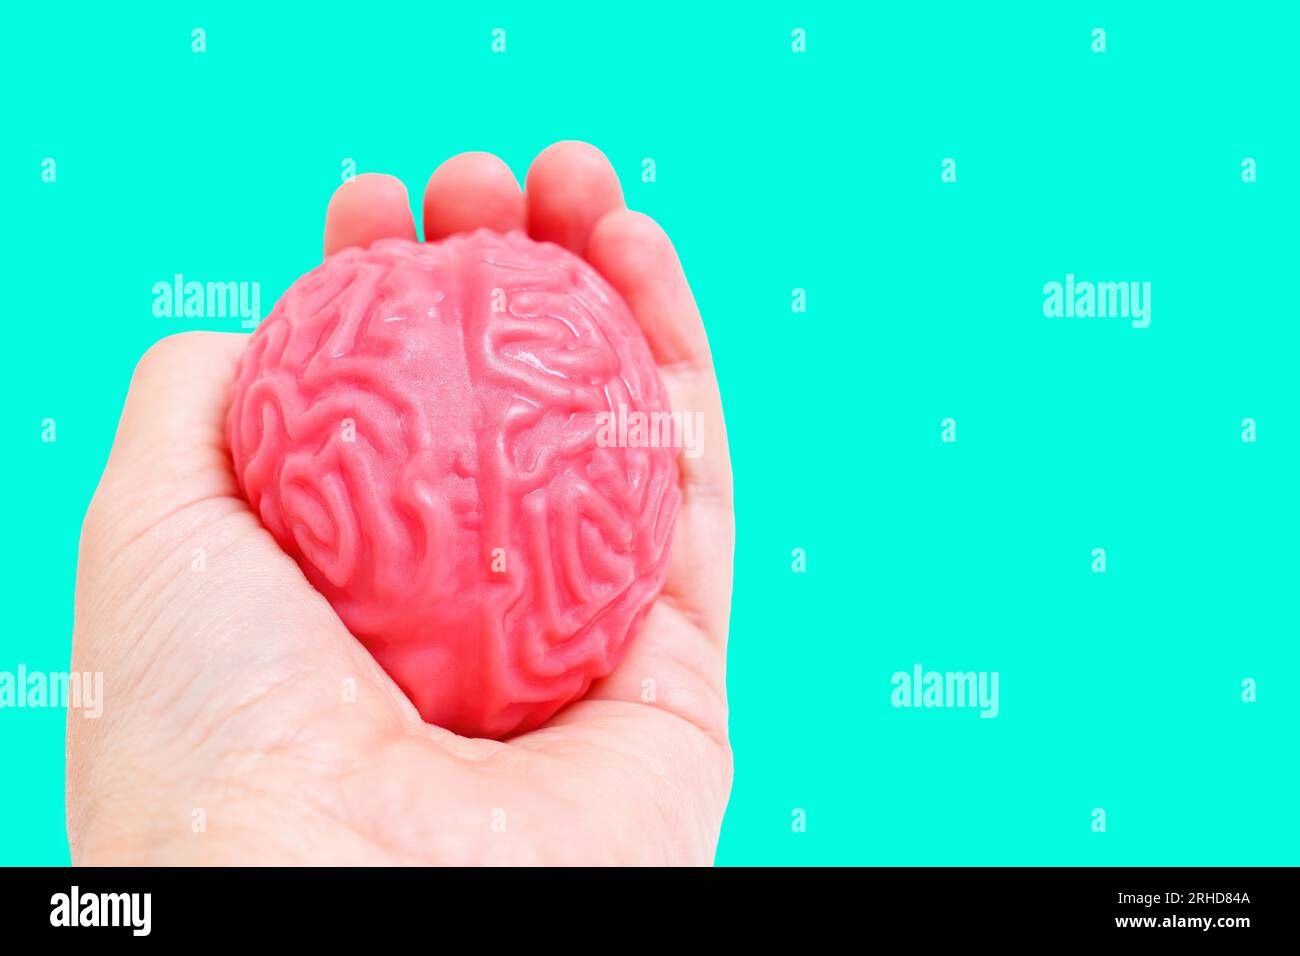 Ein geleeartiges menschliches Gehirnmodell liegt zart in der Hand vor einem ruhigen grünen Hintergrund. Neurowissenschaft, Kognition und medizinische Forschung konc Stockfoto